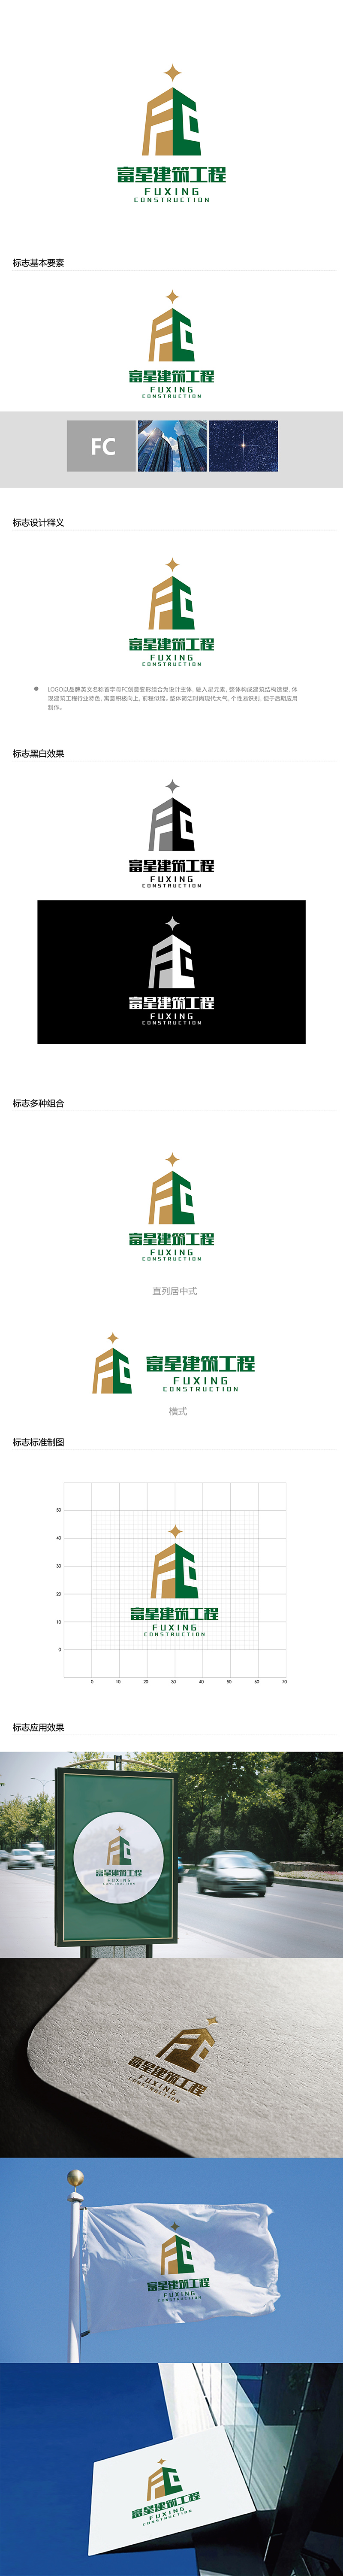 勇炎的天津富星建筑工程有限公司logo设计